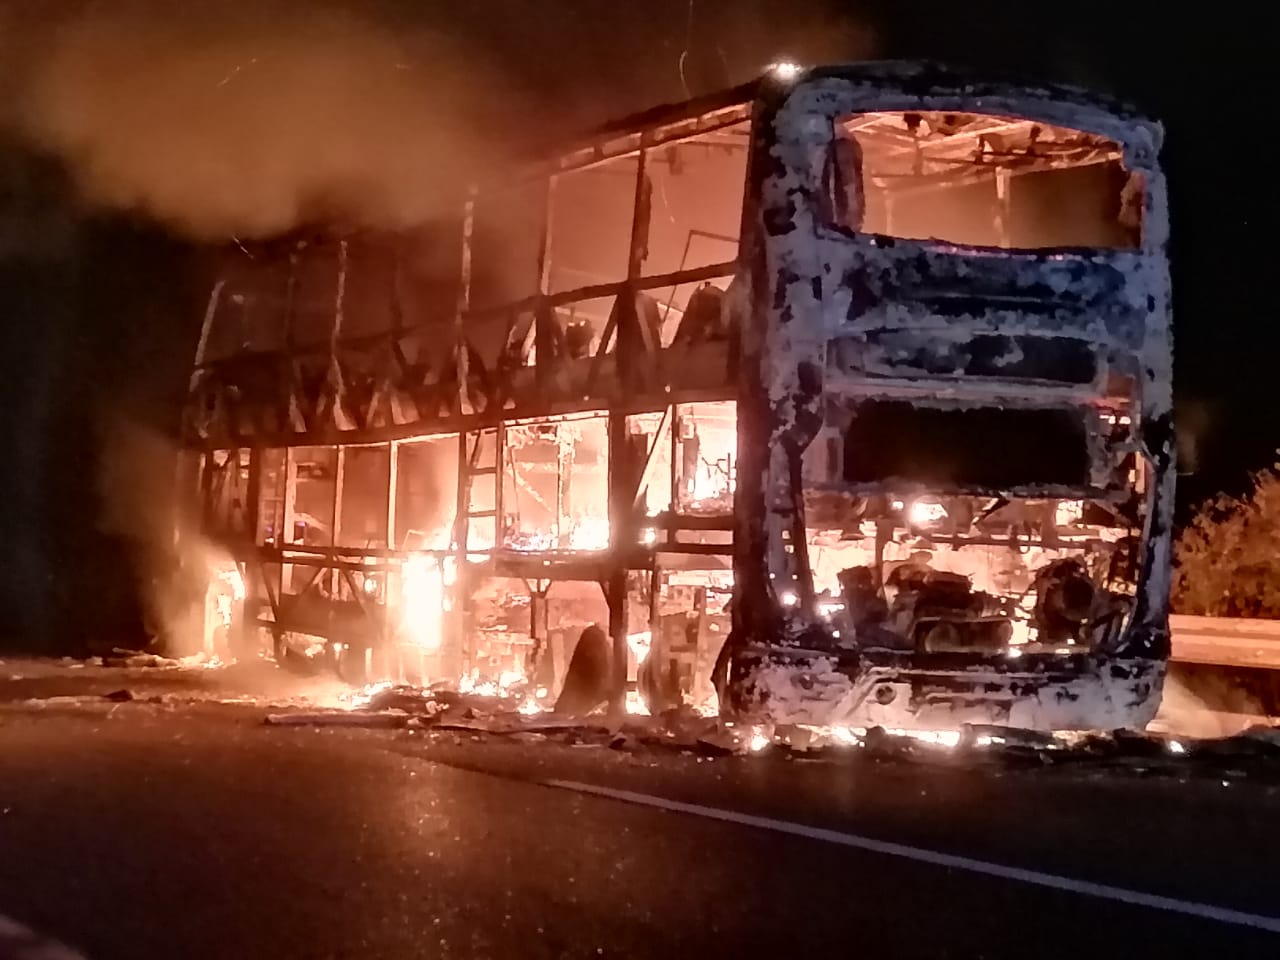 Incendio consumió por completo a bus en carretera de Ovalle: pasajeros salieron ilesos